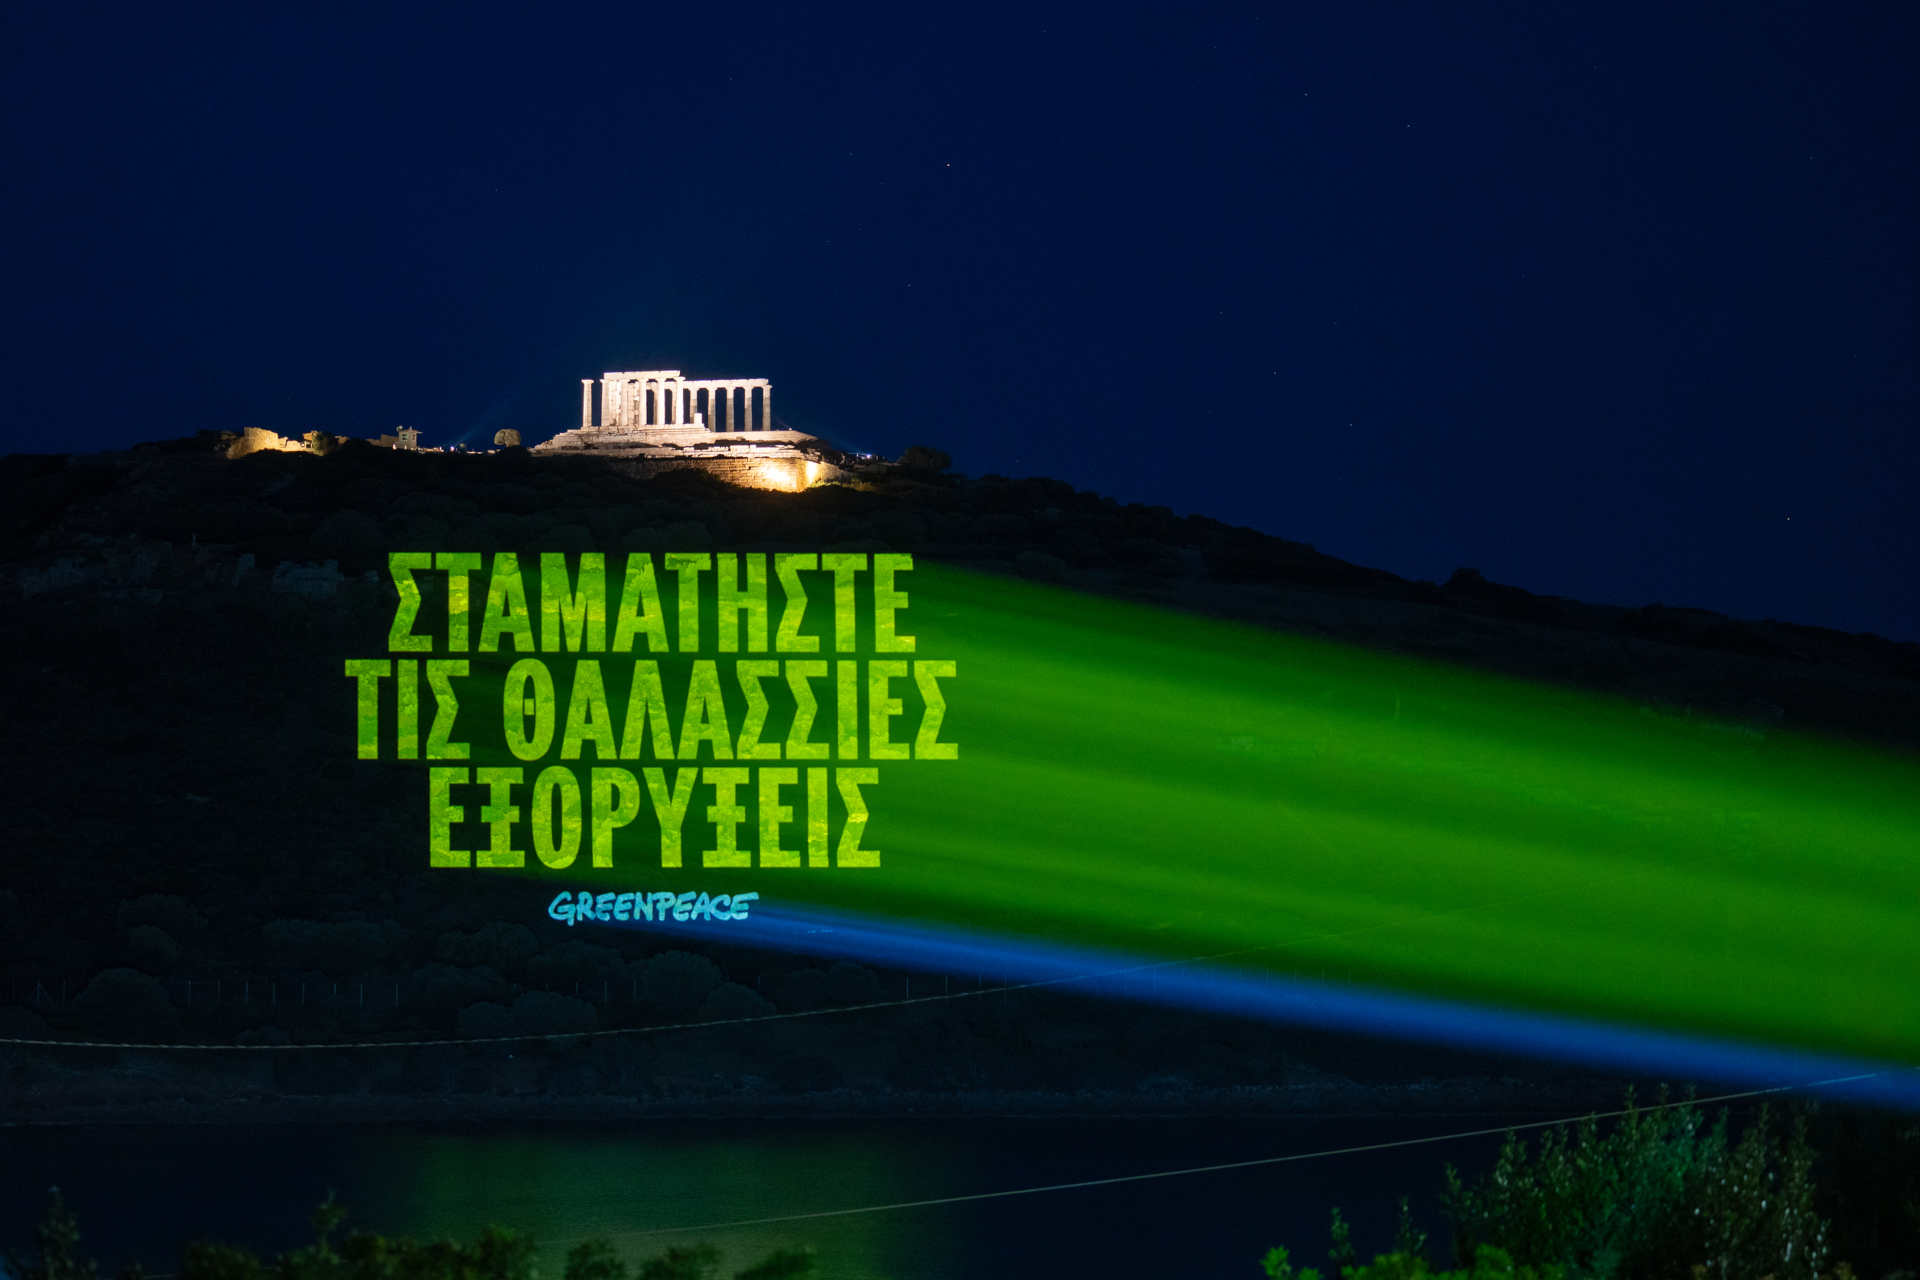 Griechenland: die Nachricht auf Griechisch, die lautet